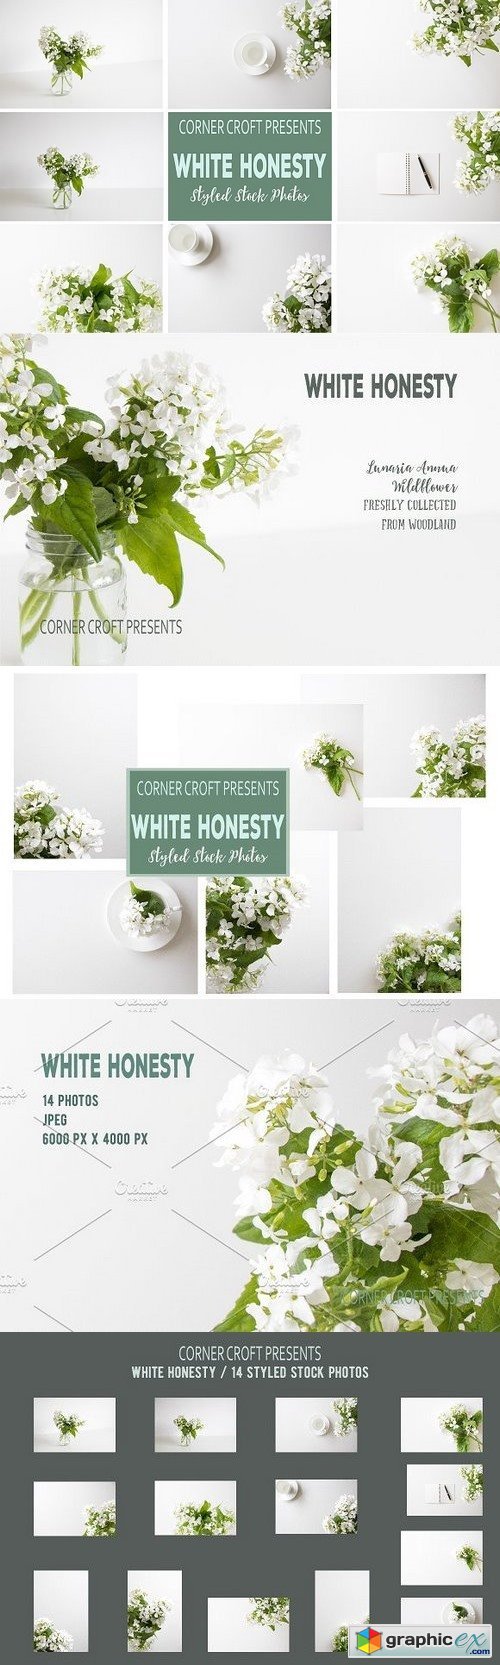 White Honesty Stock Photo Bundle